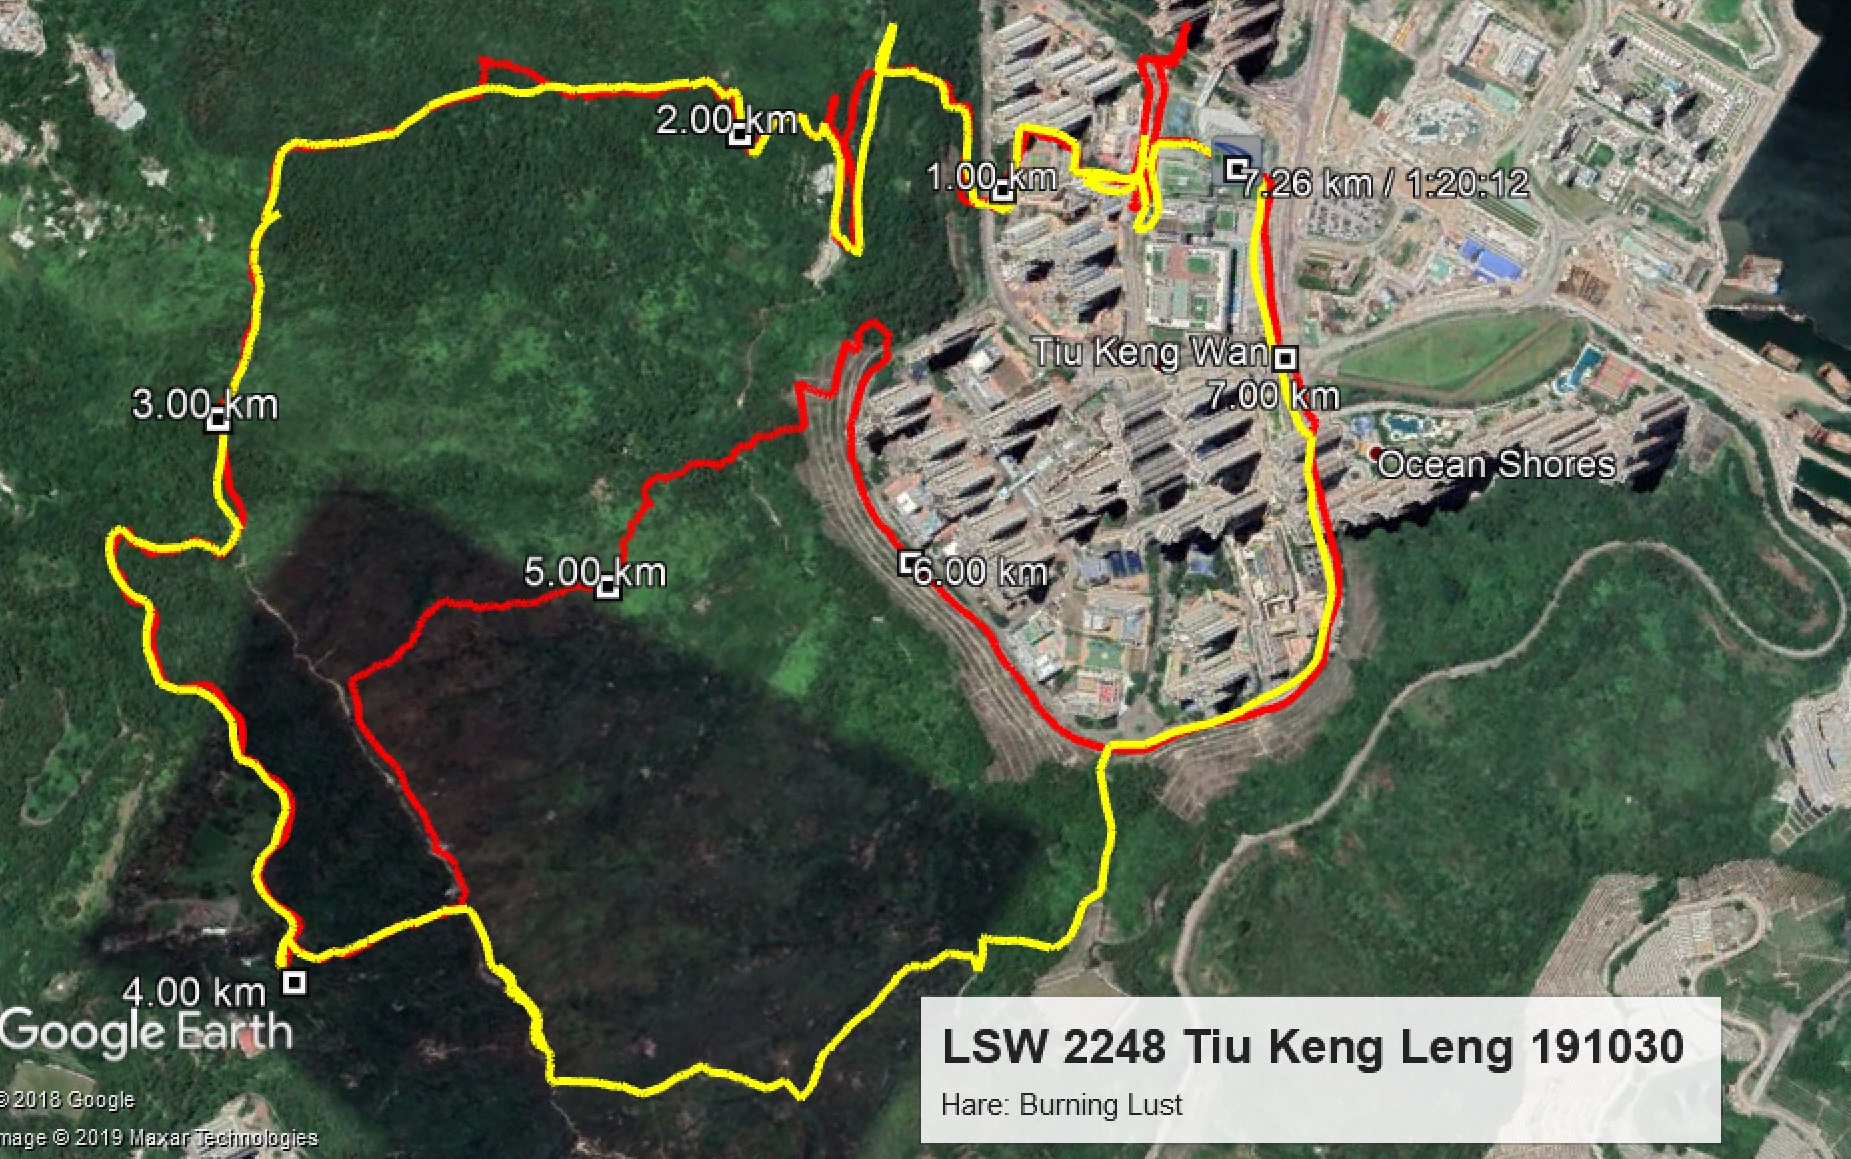 Tiu Keng Leng 191030 7.26km 80mins